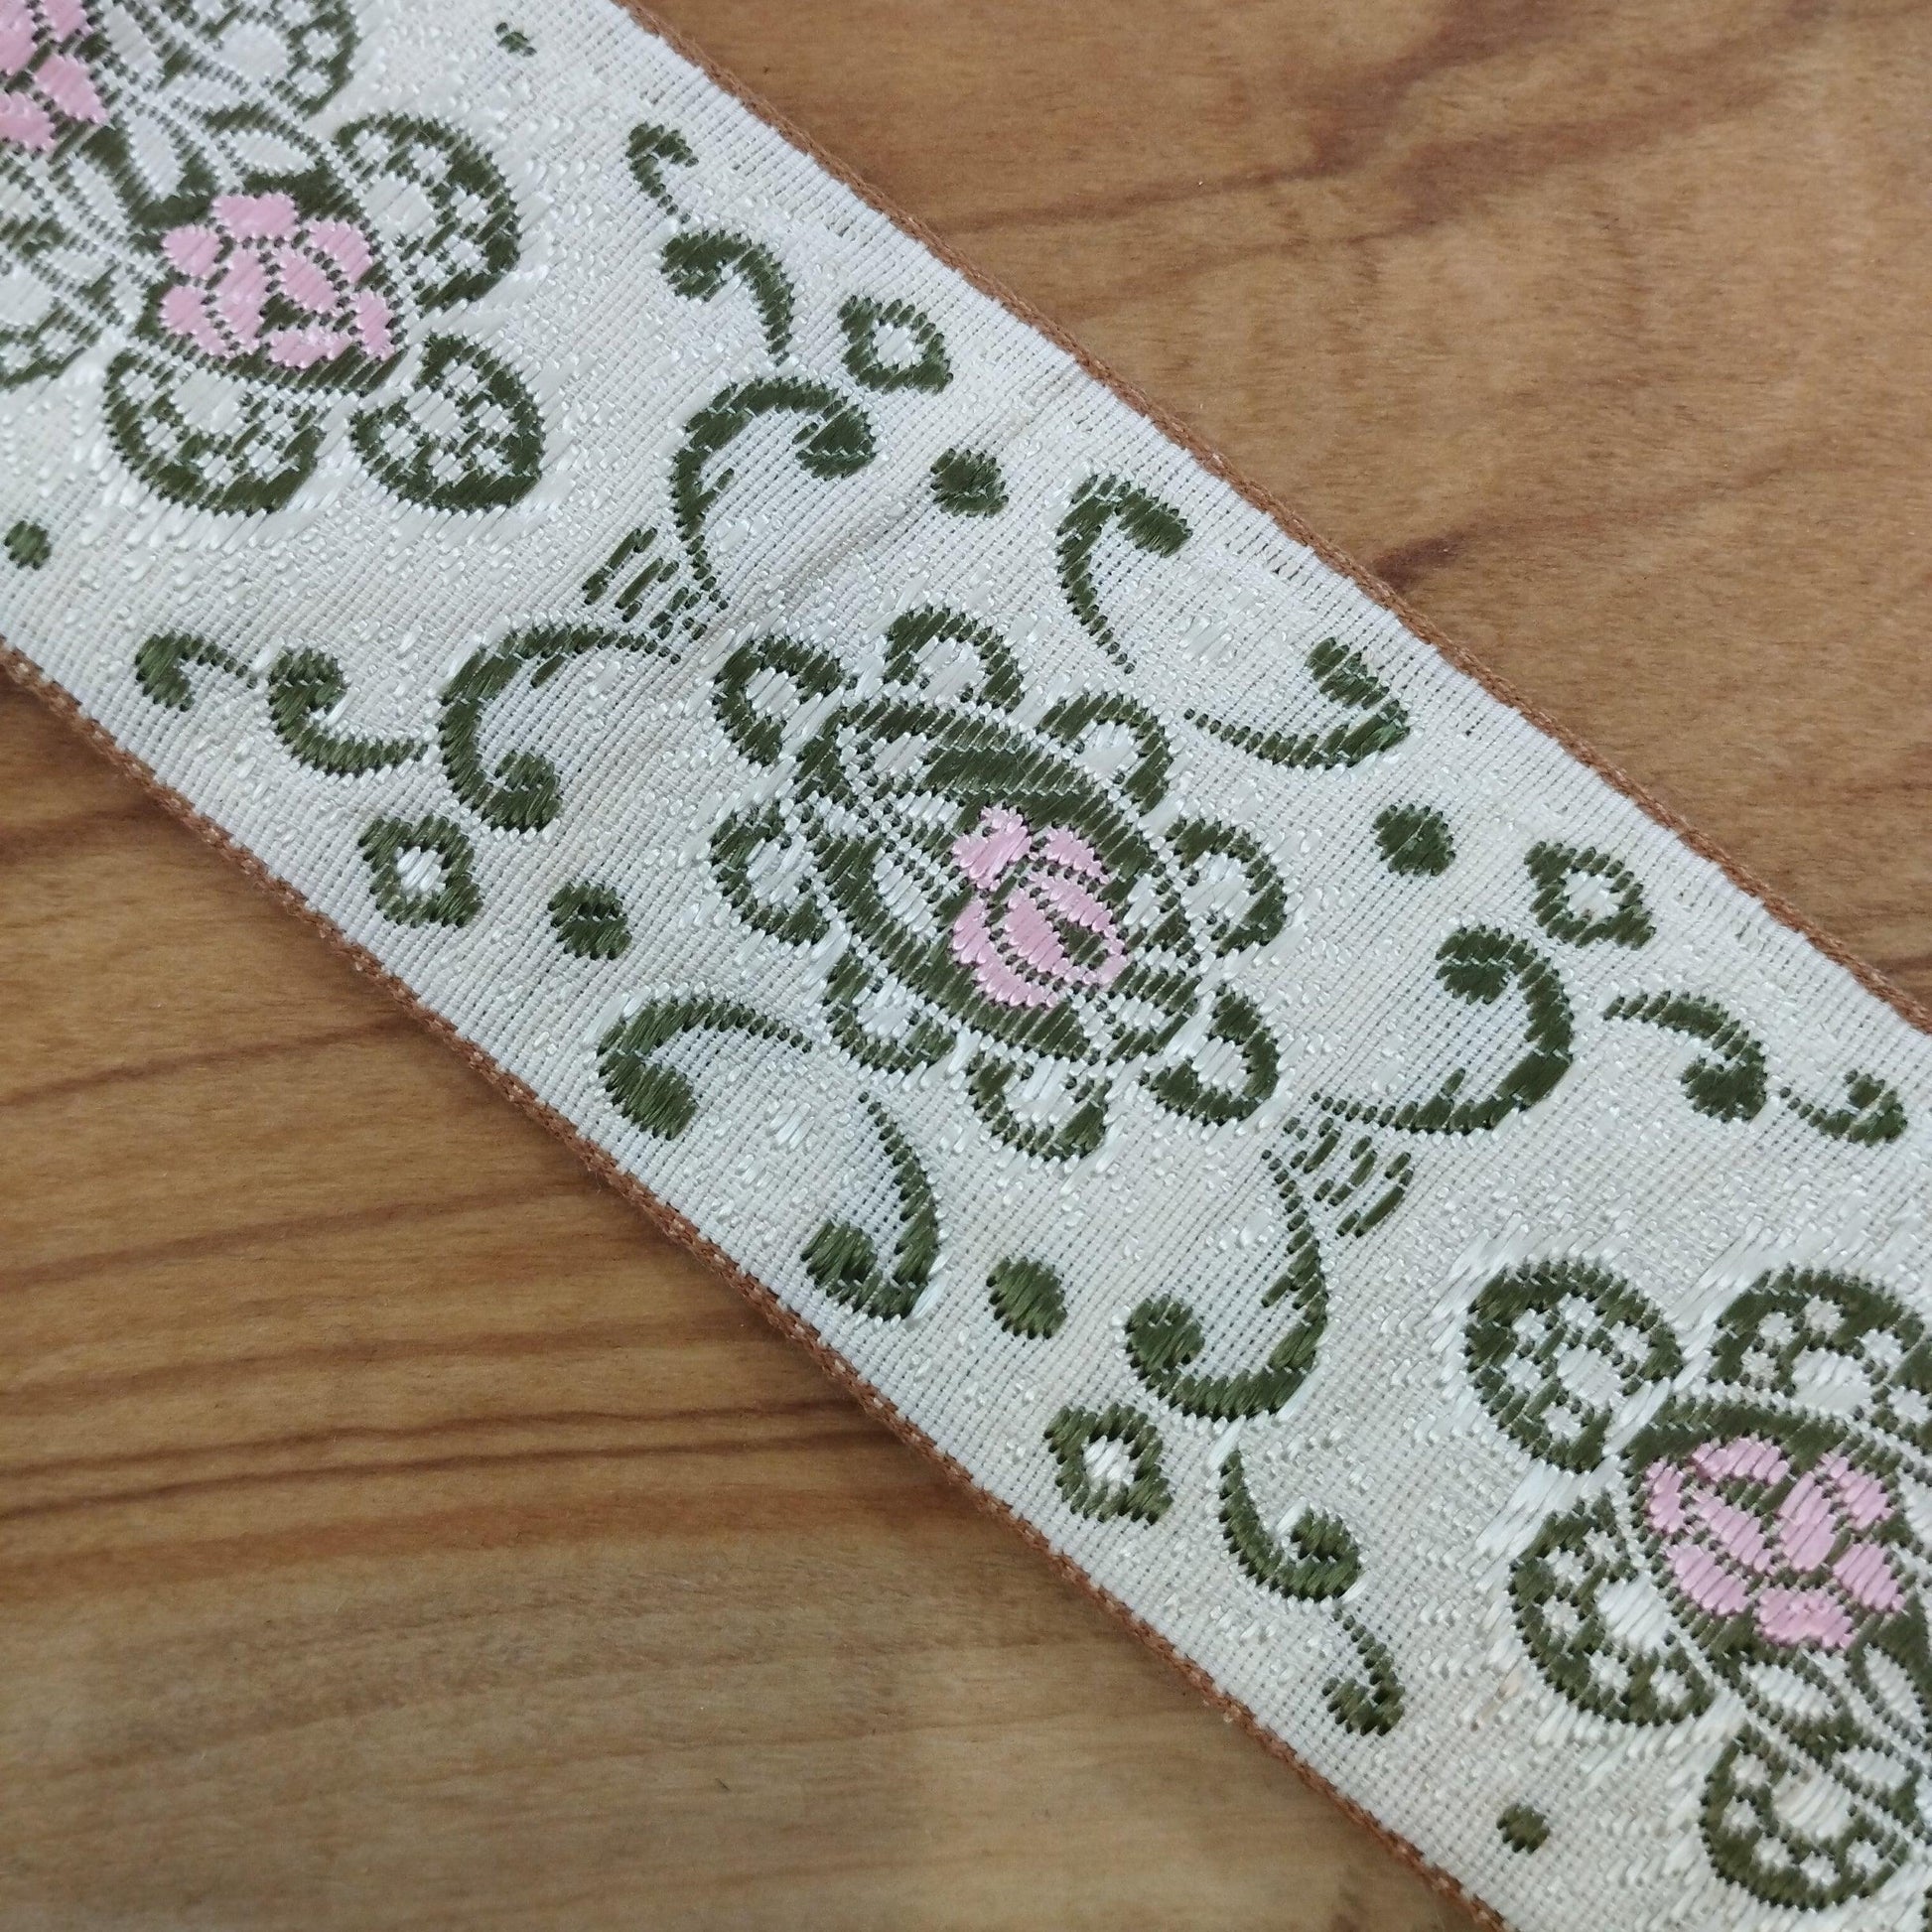 Gallone panna con disegni damascati rosa/verde - Merceria Rispoli